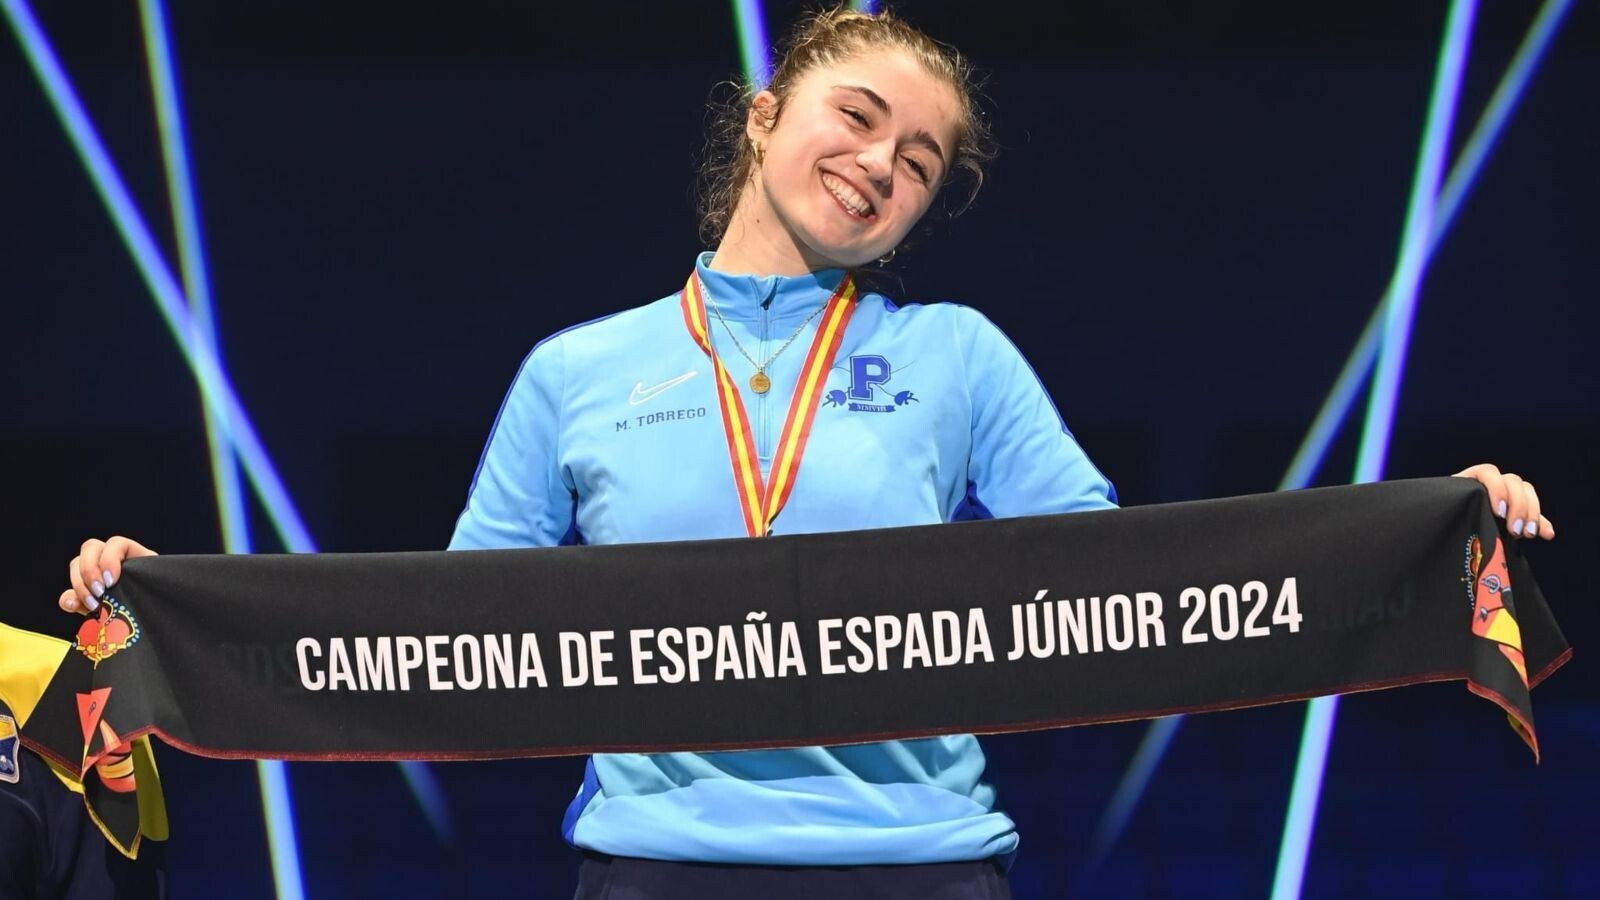 El Club de Esgrima Pozuelo destaca en el Campeonato de España Júnior con María Torrego a la cabeza